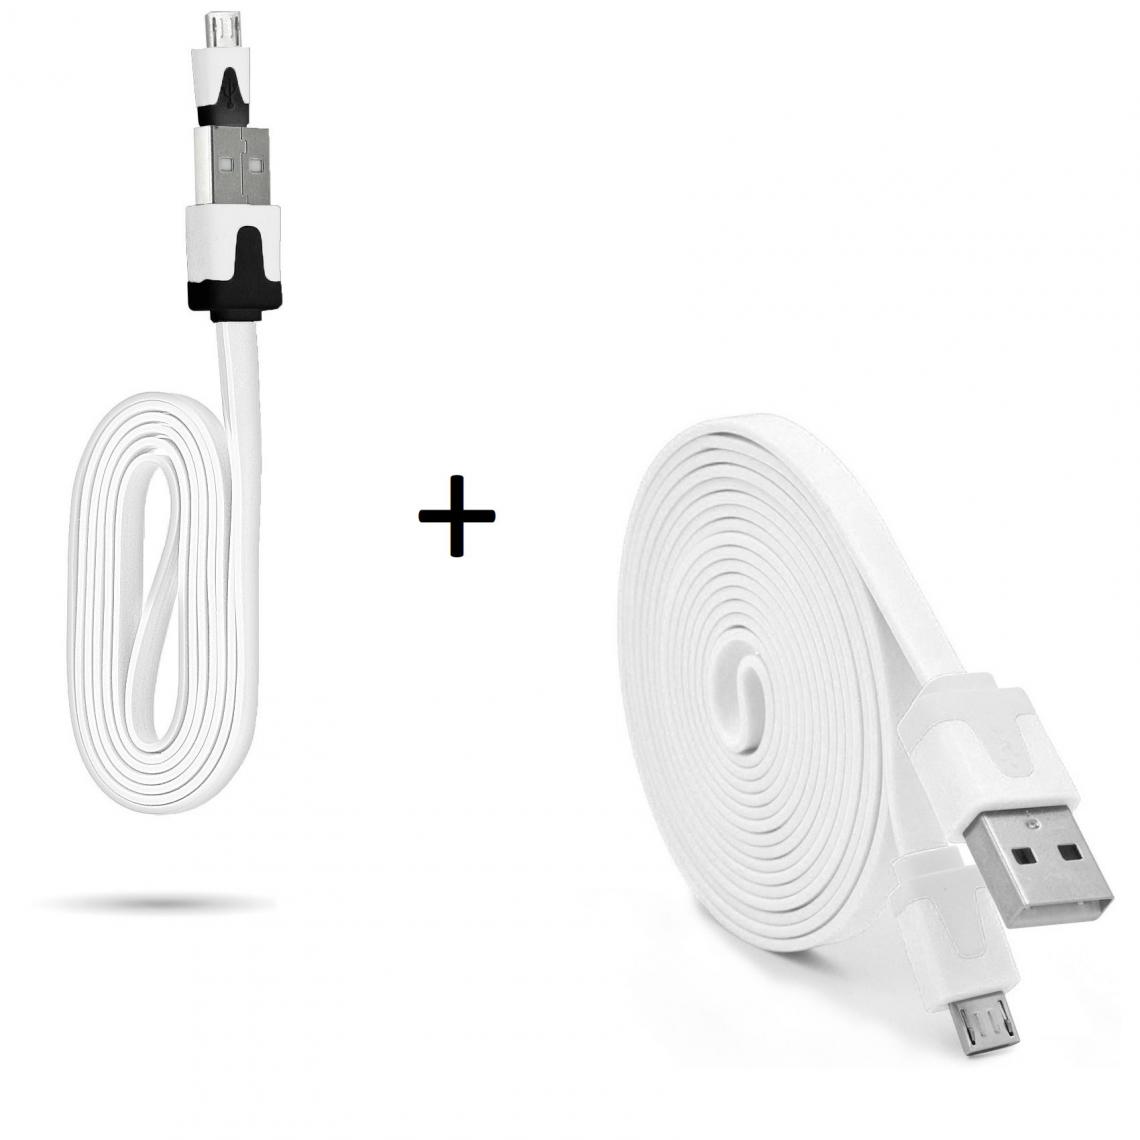 Shot - Pack Chargeur pour JBL GO 2 Smartphone Micro USB (Cable Noodle 3m + Cable Noodle 1m) Android (BLANC) - Chargeur secteur téléphone